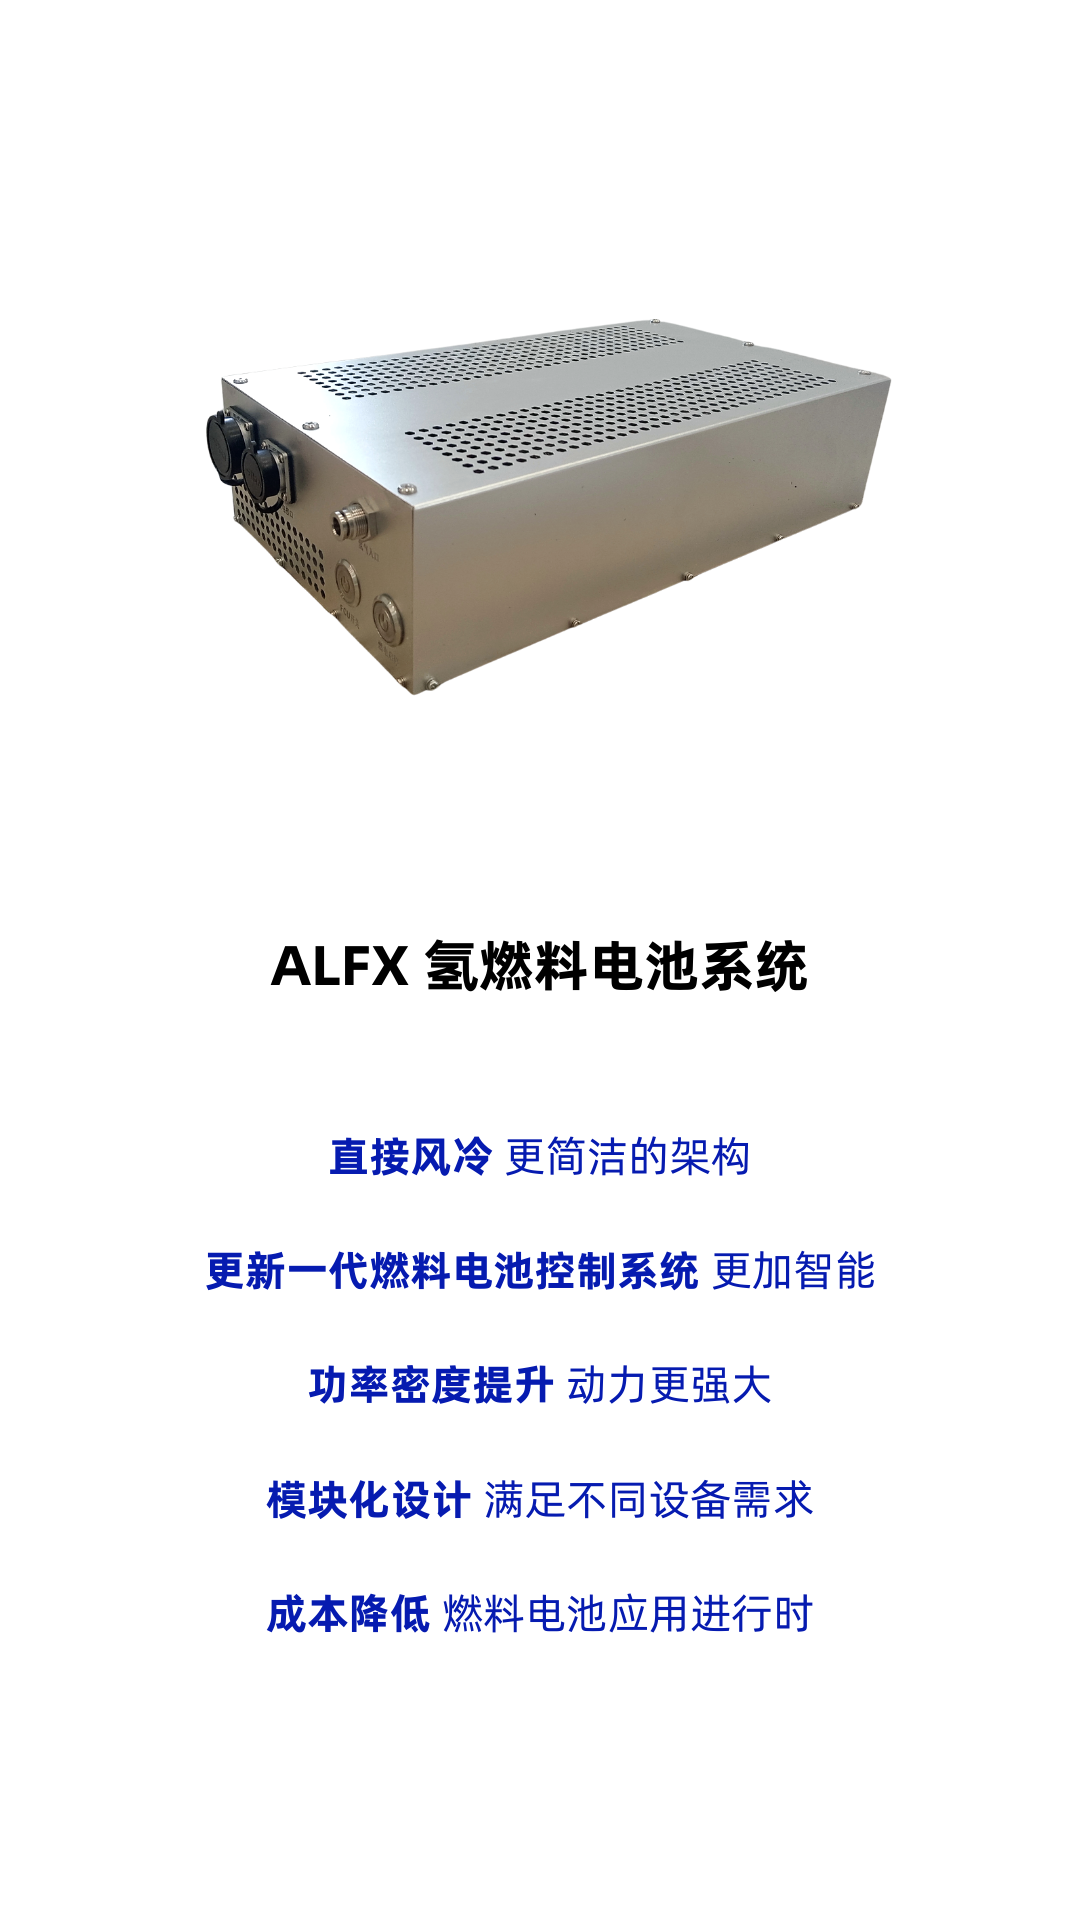 ​暗流科技发布 ALFX风冷式氢燃料电池系统，适用于小功率场景!